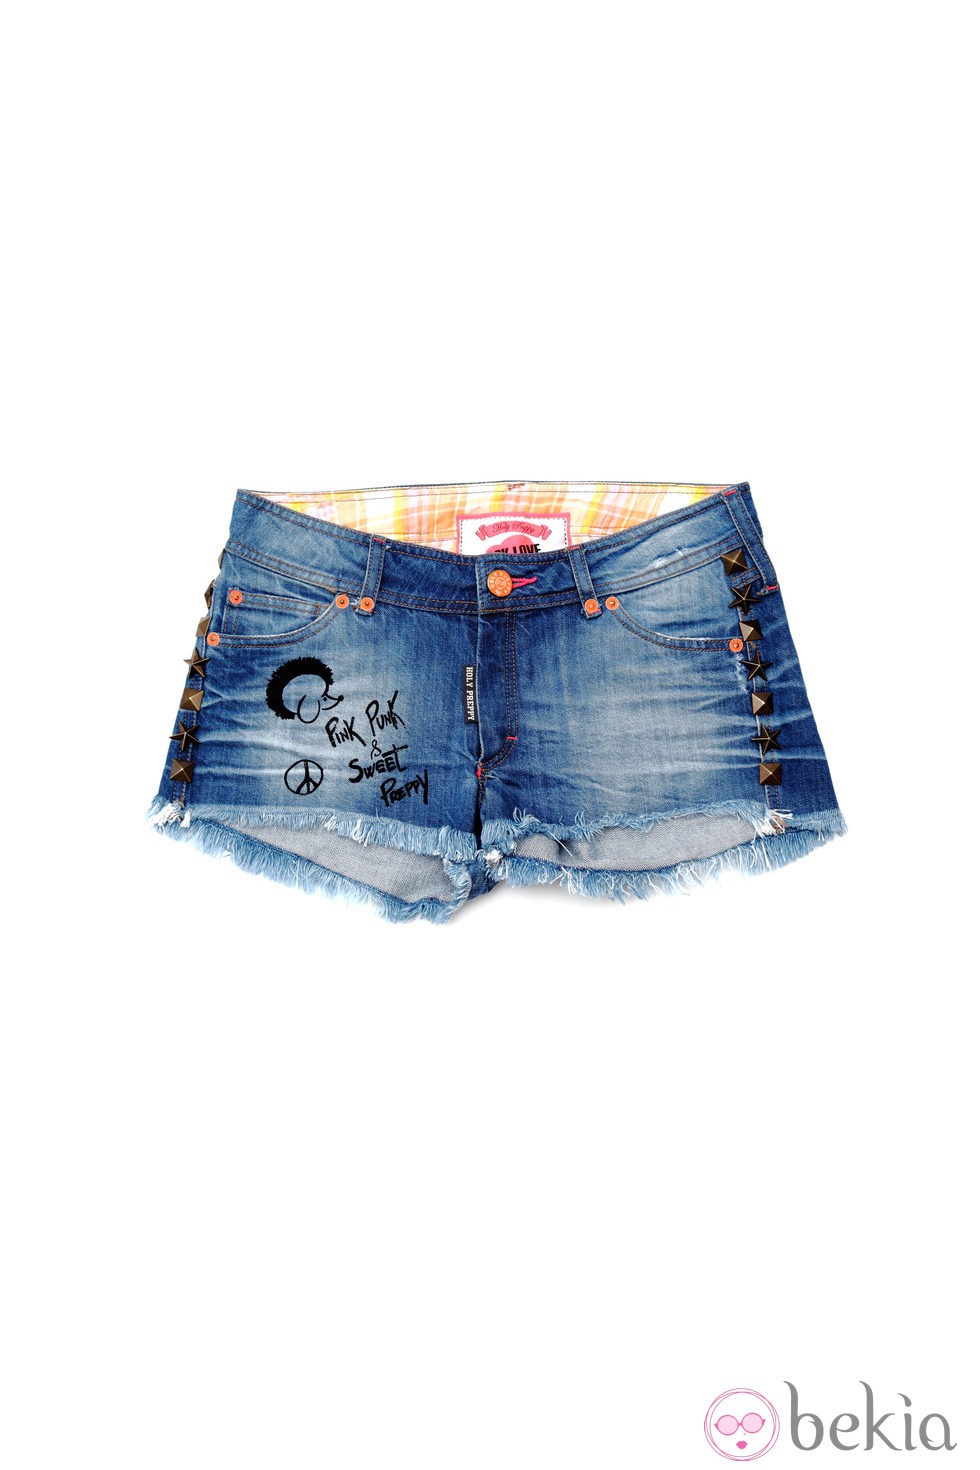 Shorts de la línea 'Bad girl' de la colección primavera/verano 2013 de Holy Preppy